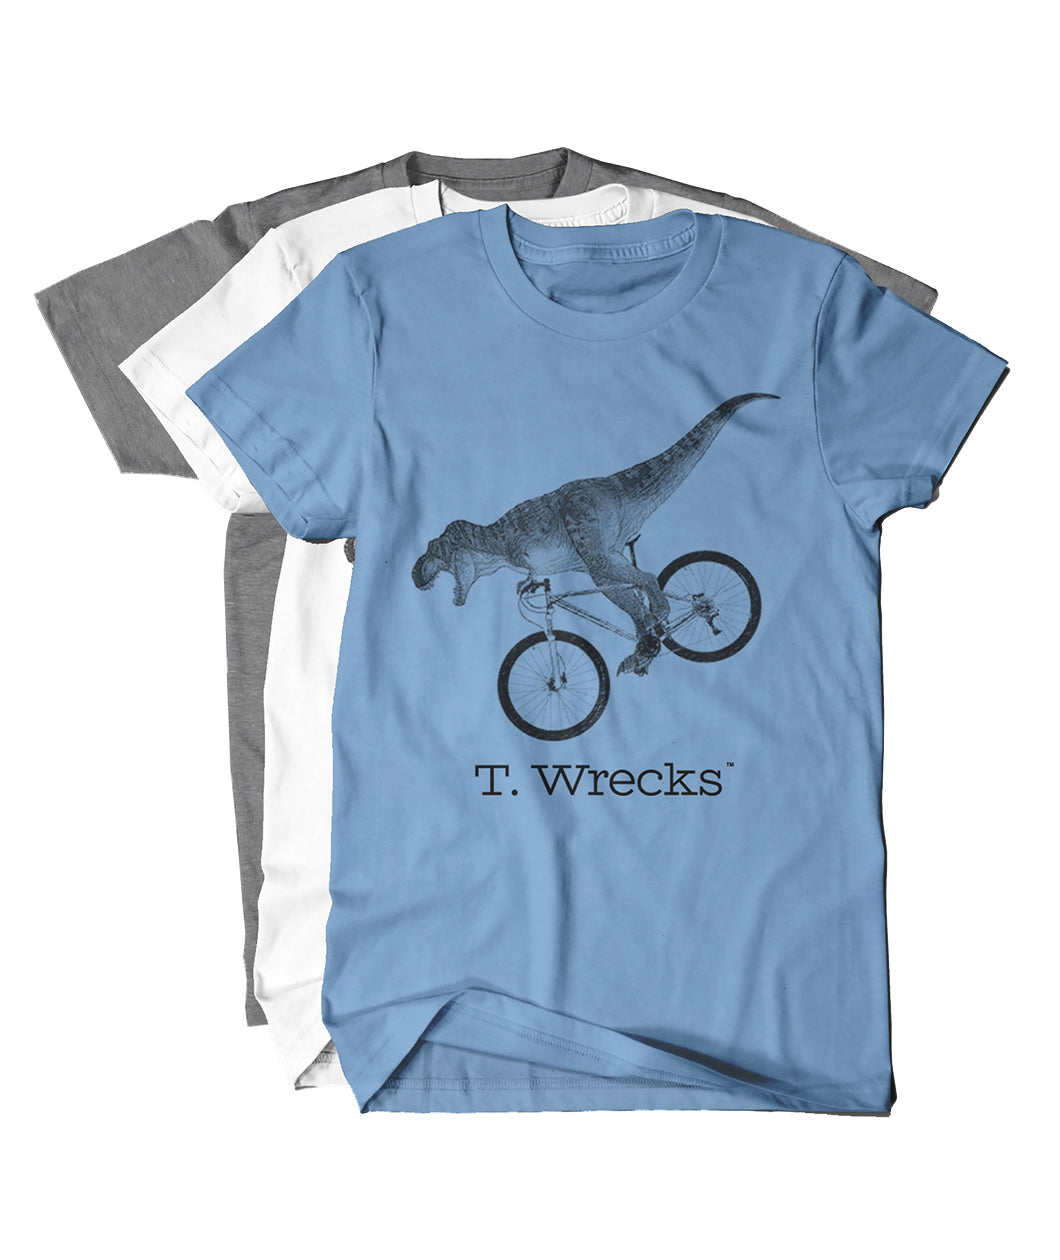 T. Wrecks Shirt - Kids